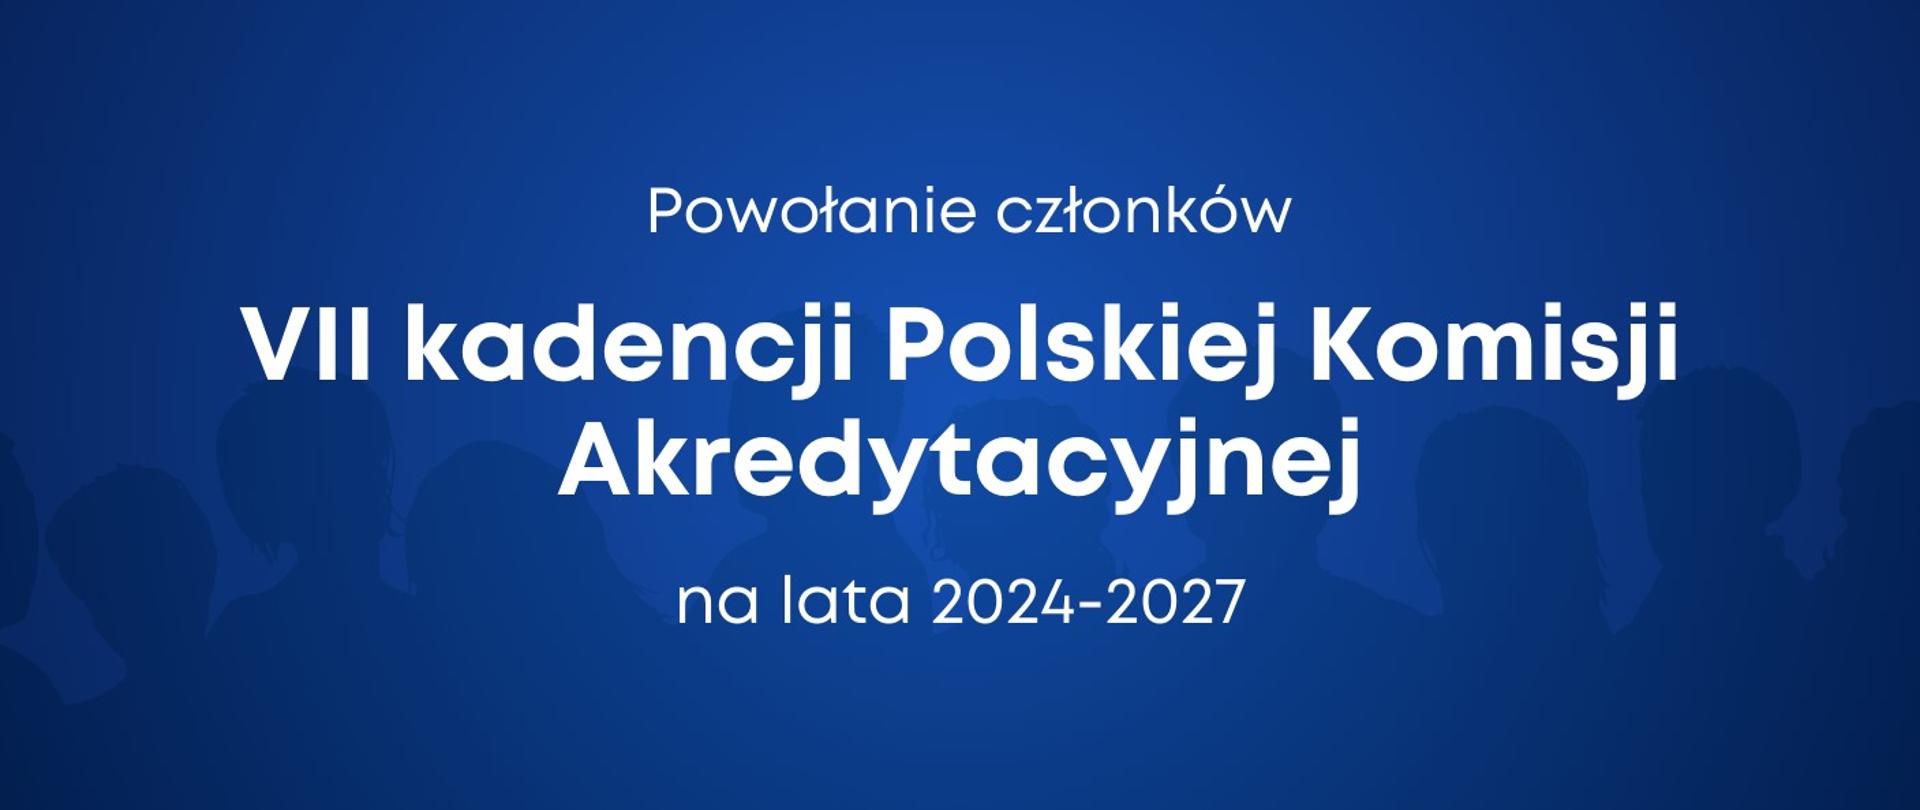 Powołanie członków VII kadencji Polskiej Komisji Akredytacyjnej na lata 2024-2027